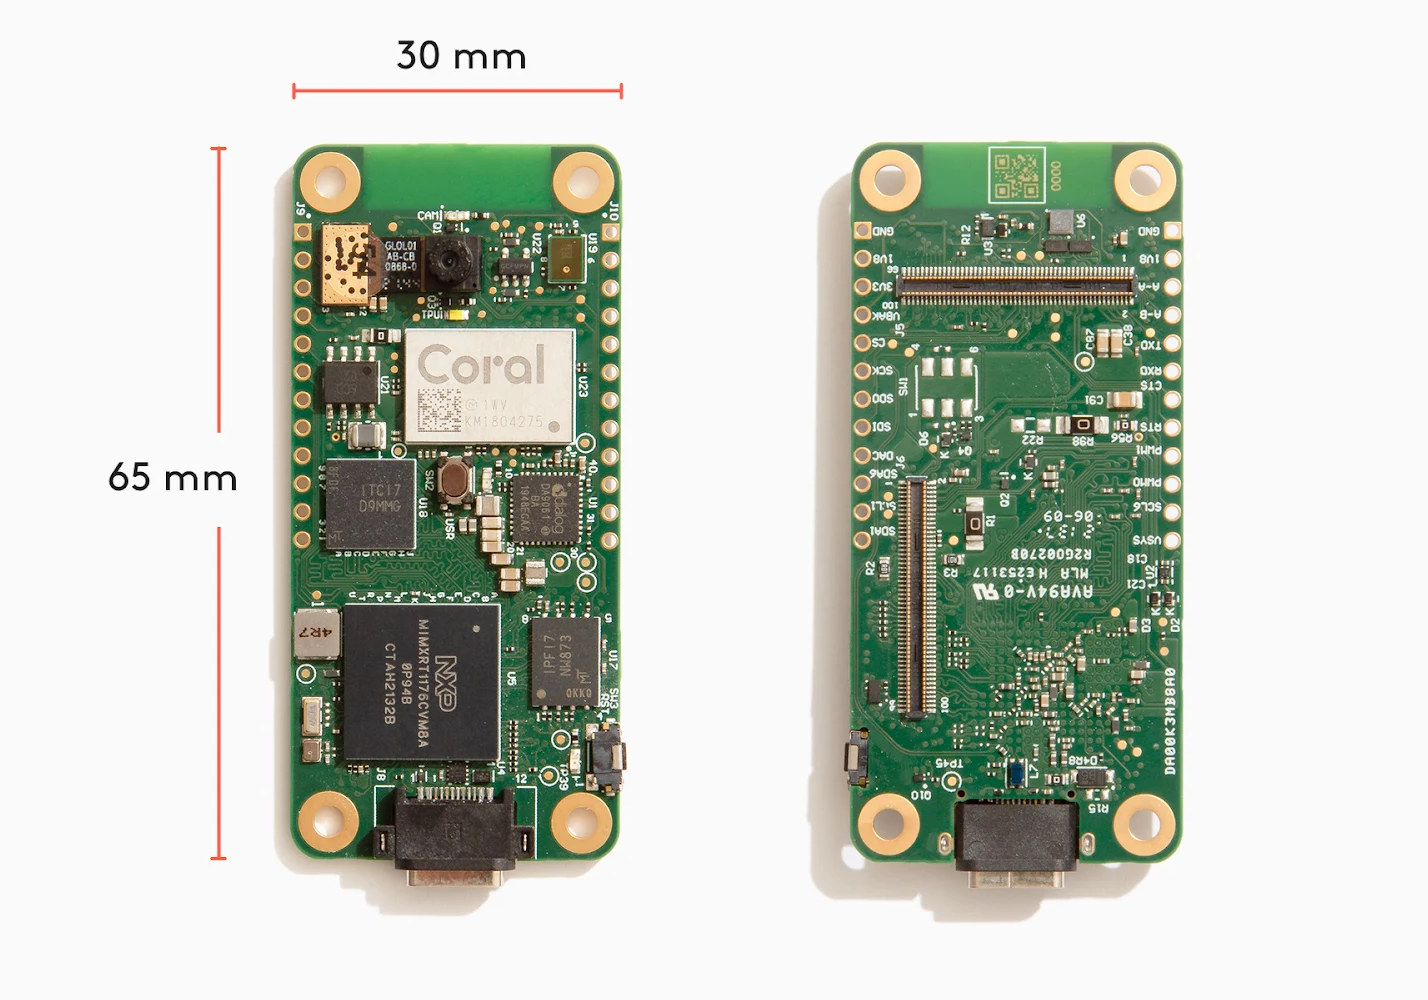 Coral Dev Board Micro combines NXP i.MX RT1176 MCU with Edge TPU in Pi Zero form factor